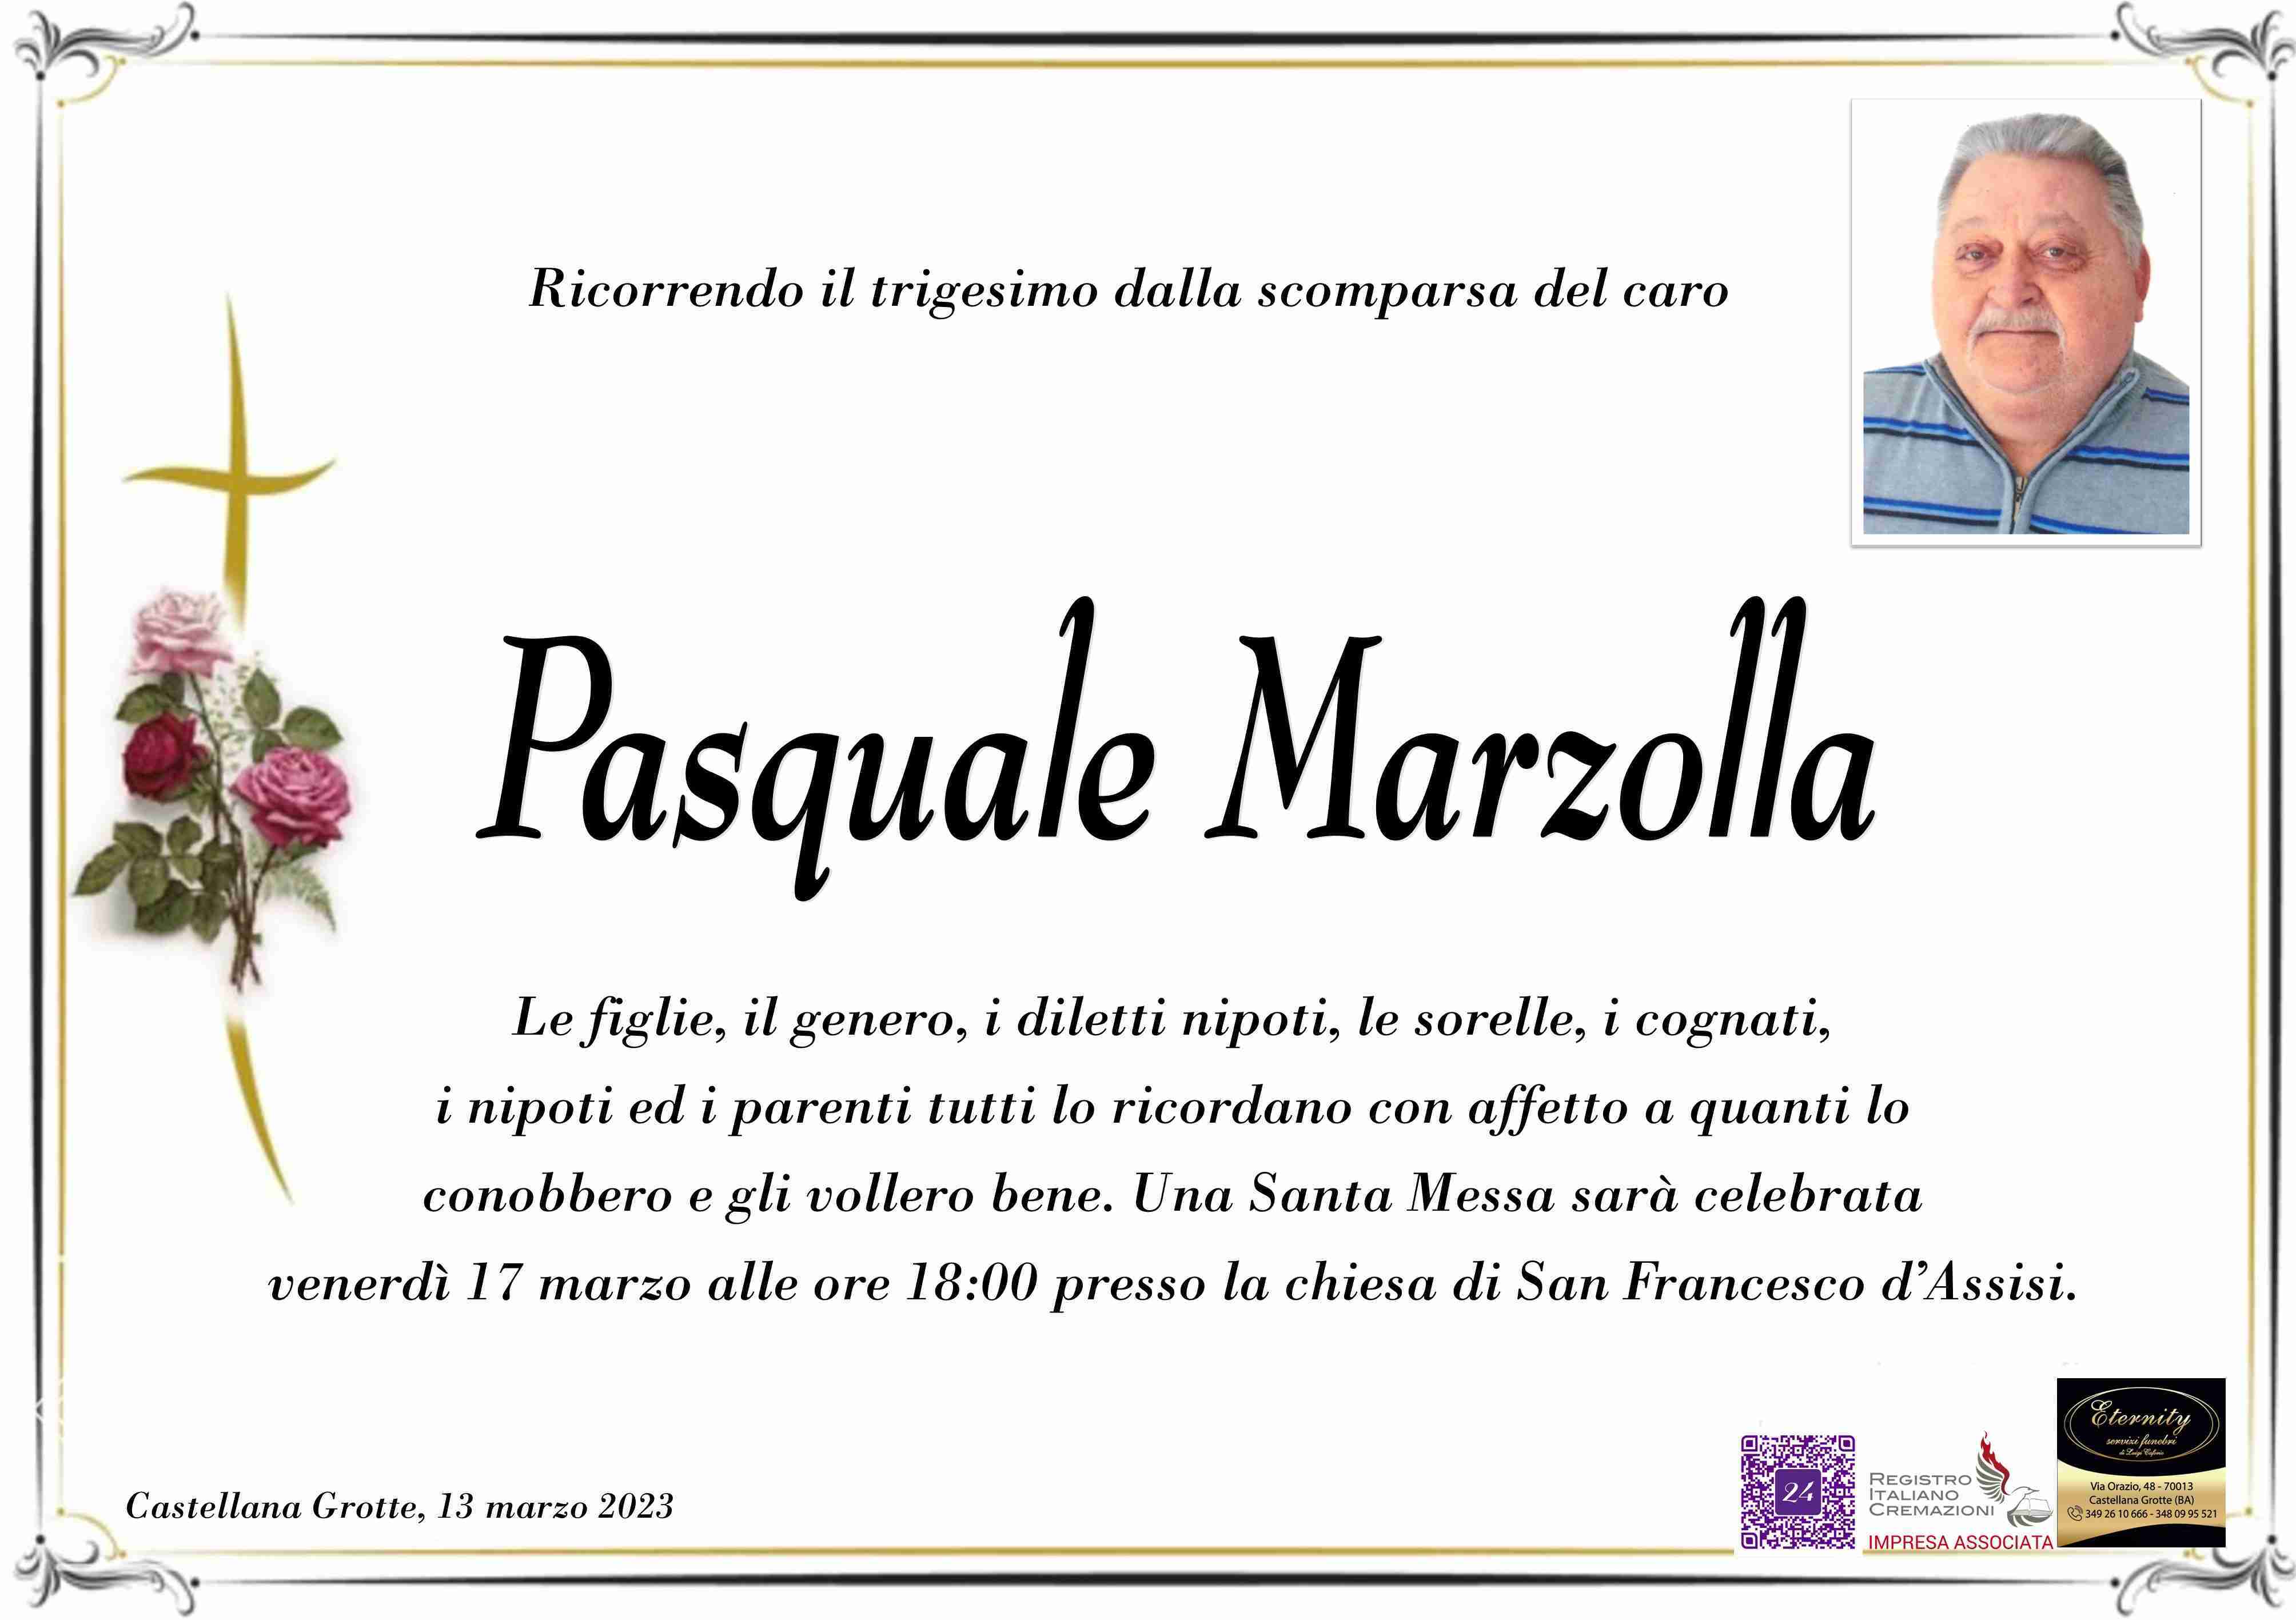 Pasquale Marzolla